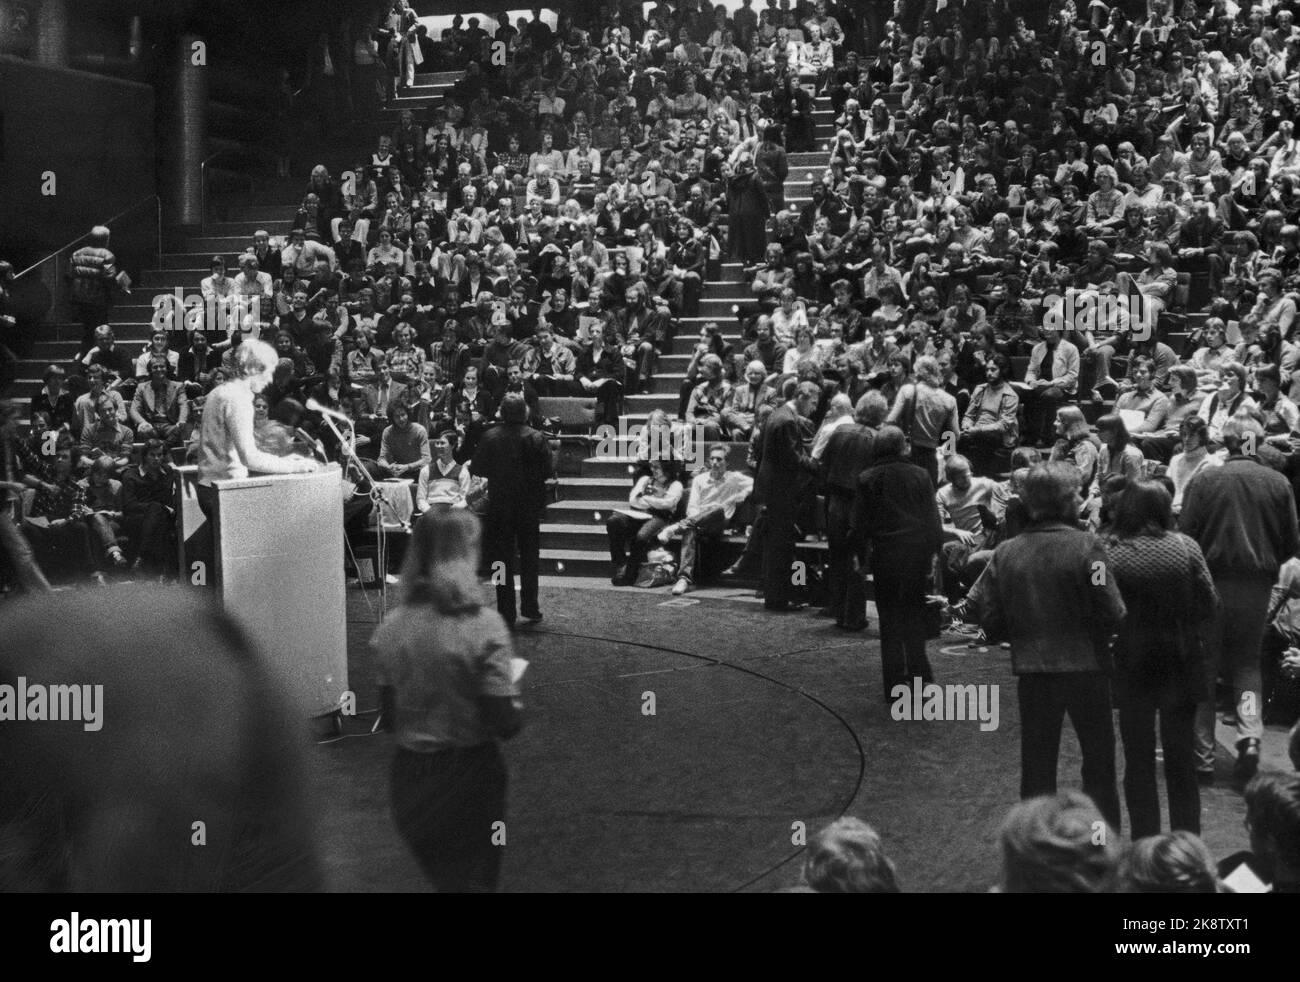 Oslo 19790407 - gli eventi di politica estera hanno indebolito i marxisti-leninisti della Norwegian Student Society? Qui da Chateu Neuf. Foto; Aftenposten / NTB LOC fisico. Varie, Società studentesca Foto Stock